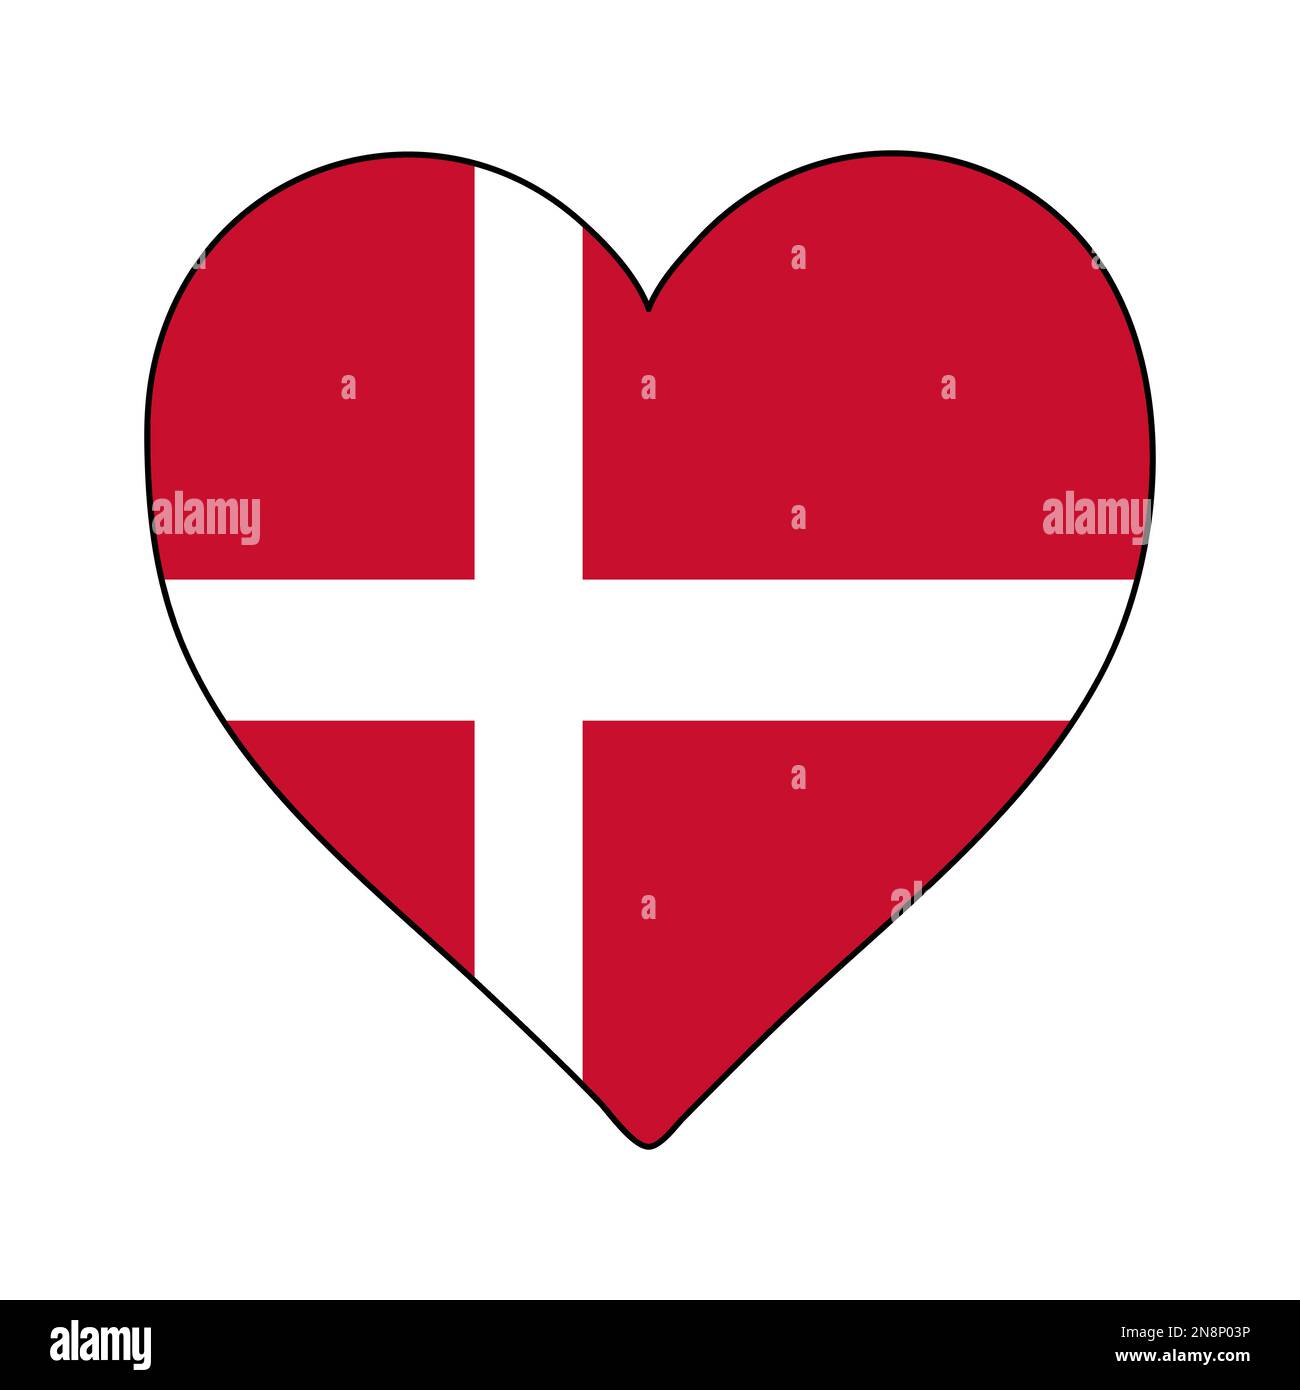 Danimarca Heart Shape Flag. Amate la Danimarca. Visita in Danimarca. Nord Europa. Europa. Unione europea. Disegno grafico dell'illustrazione vettoriale. Illustrazione Vettoriale